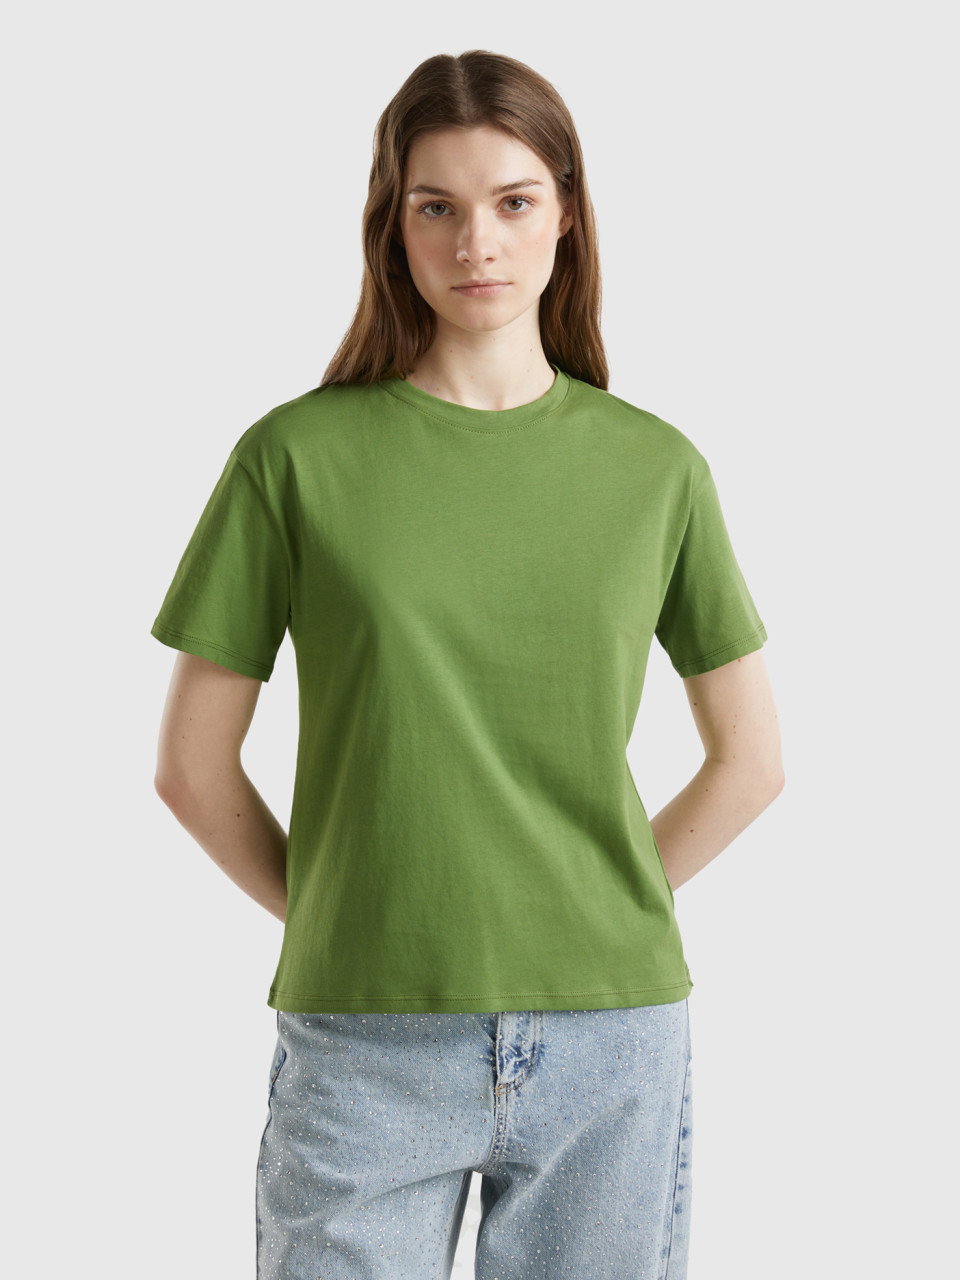 Benetton, Short Sleeve 100% Cotton T-shirt, Military Green, Women